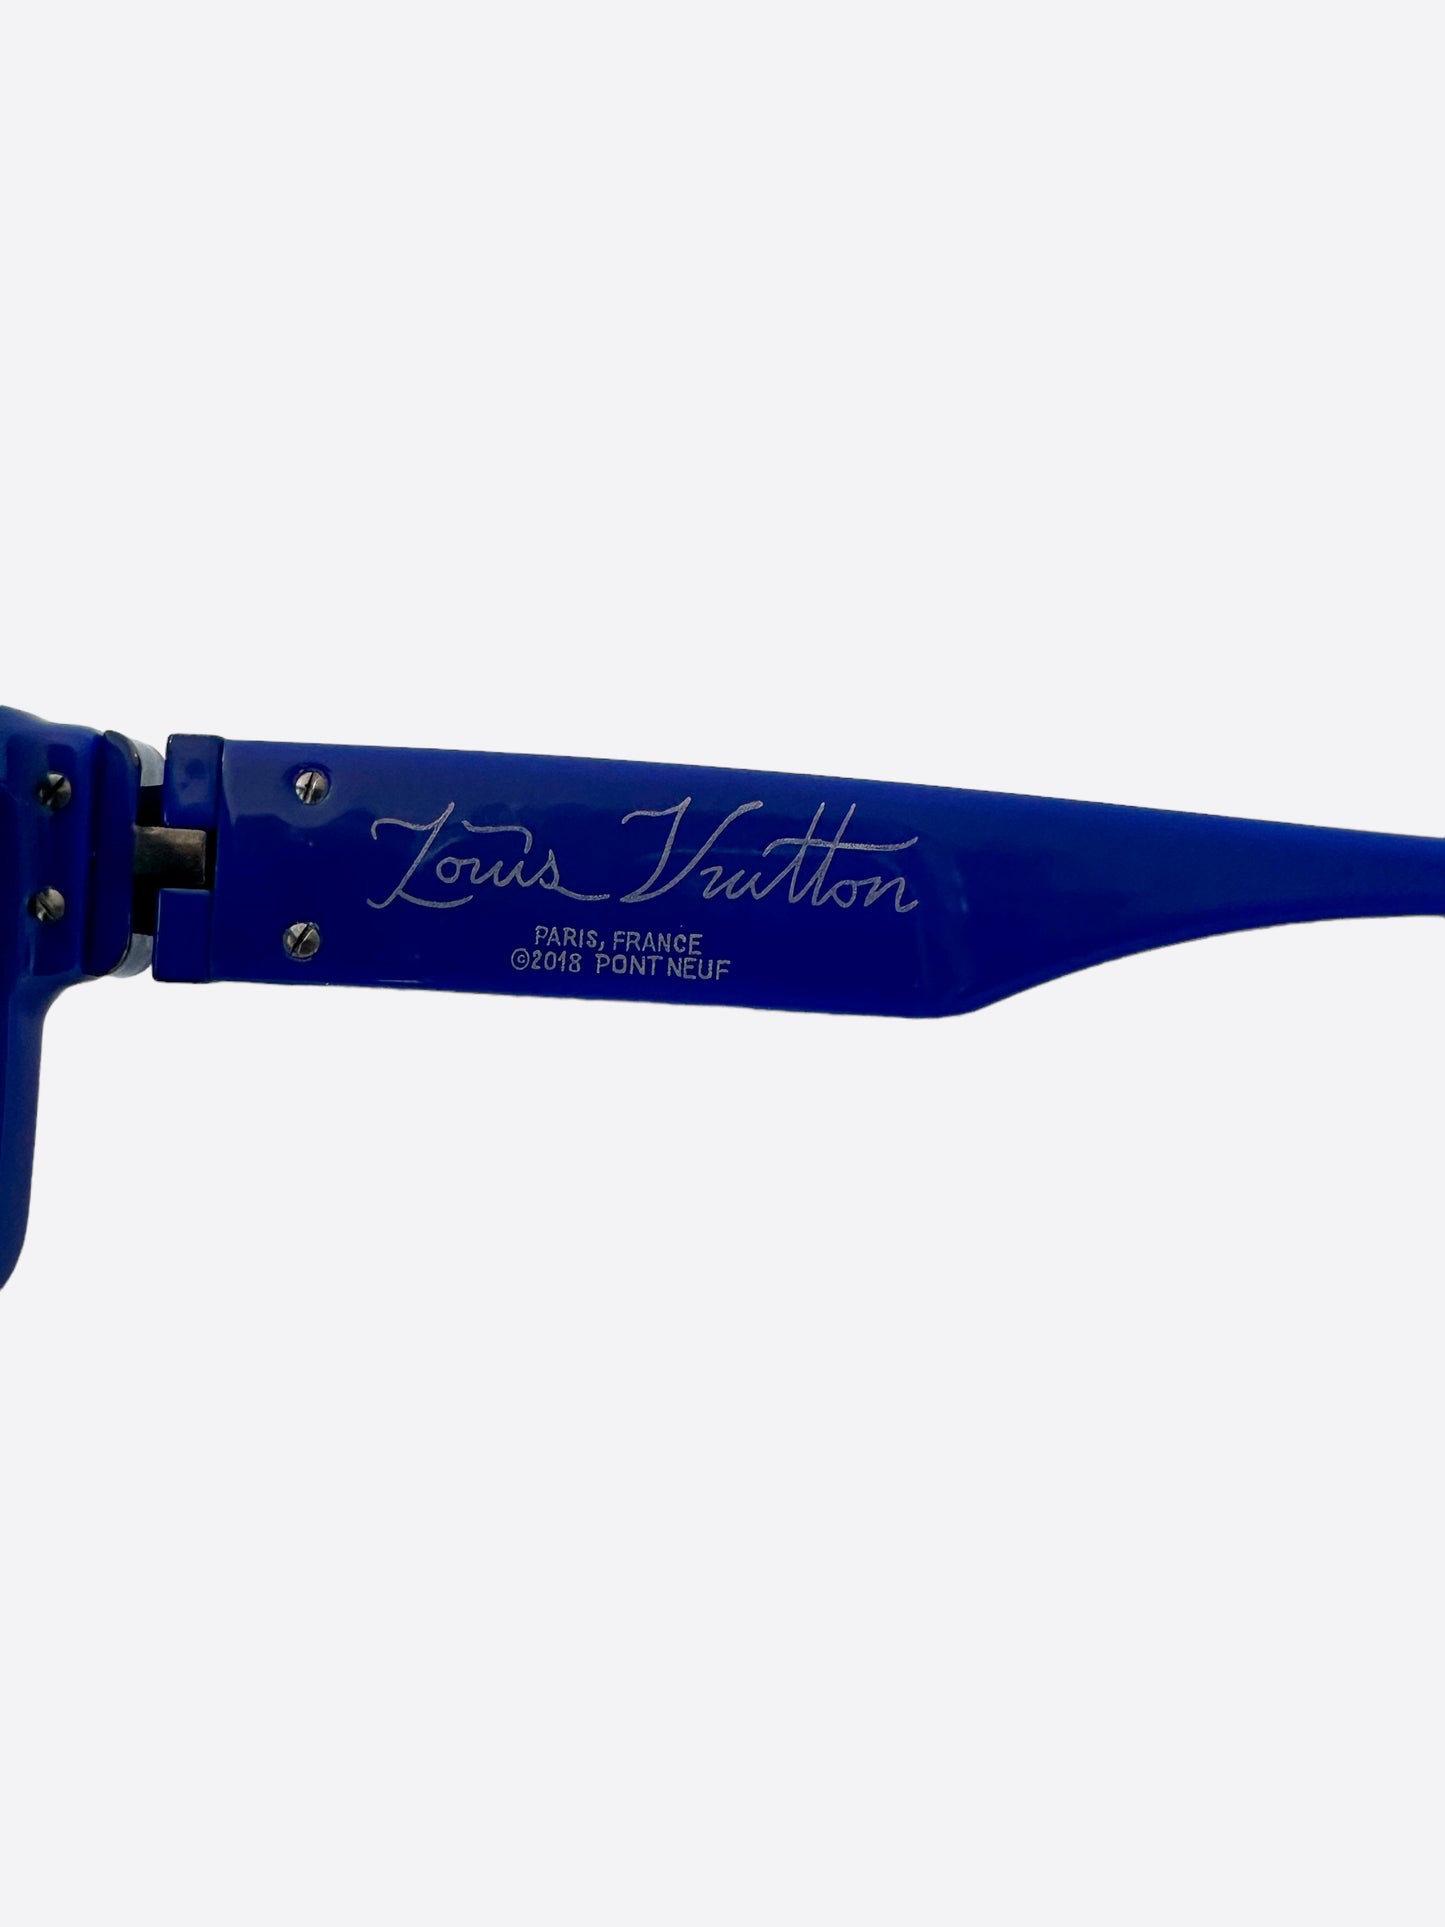 Pre-owned Louis Vuitton 1.1 Millionaires Sunglasses Cobalt